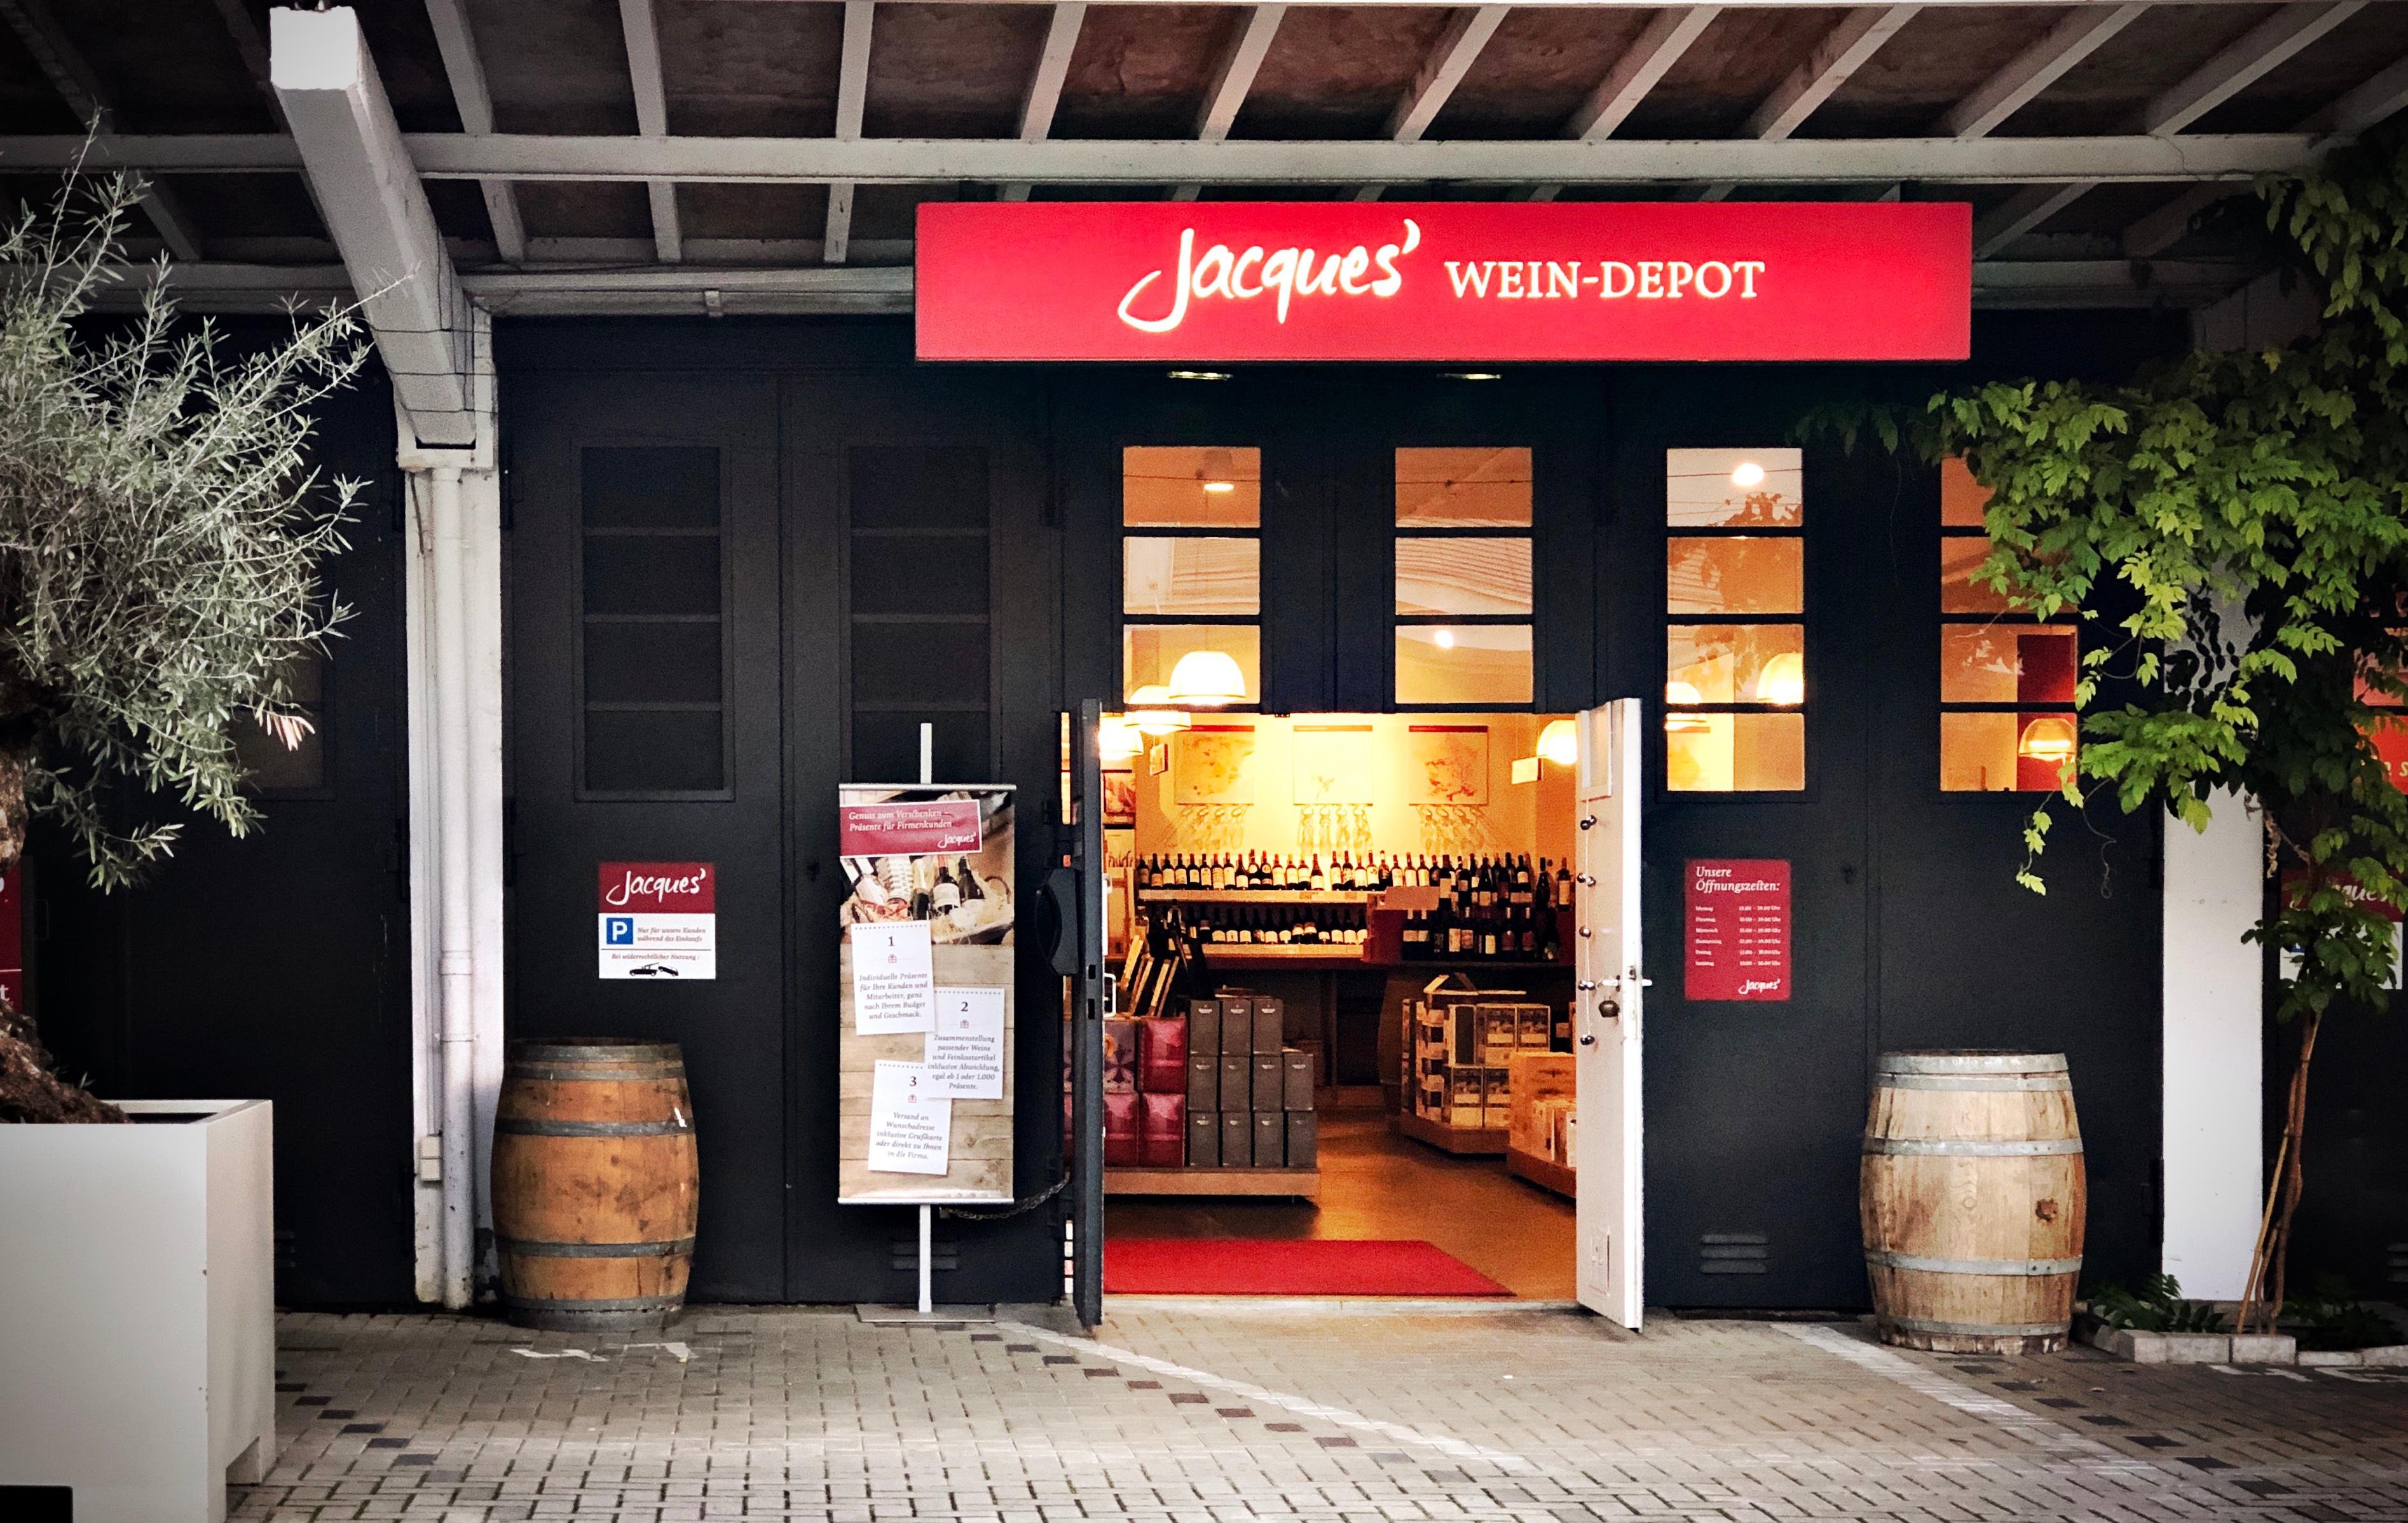 Bilder Jacques’ Wein-Depot Mannheim-Neckarau